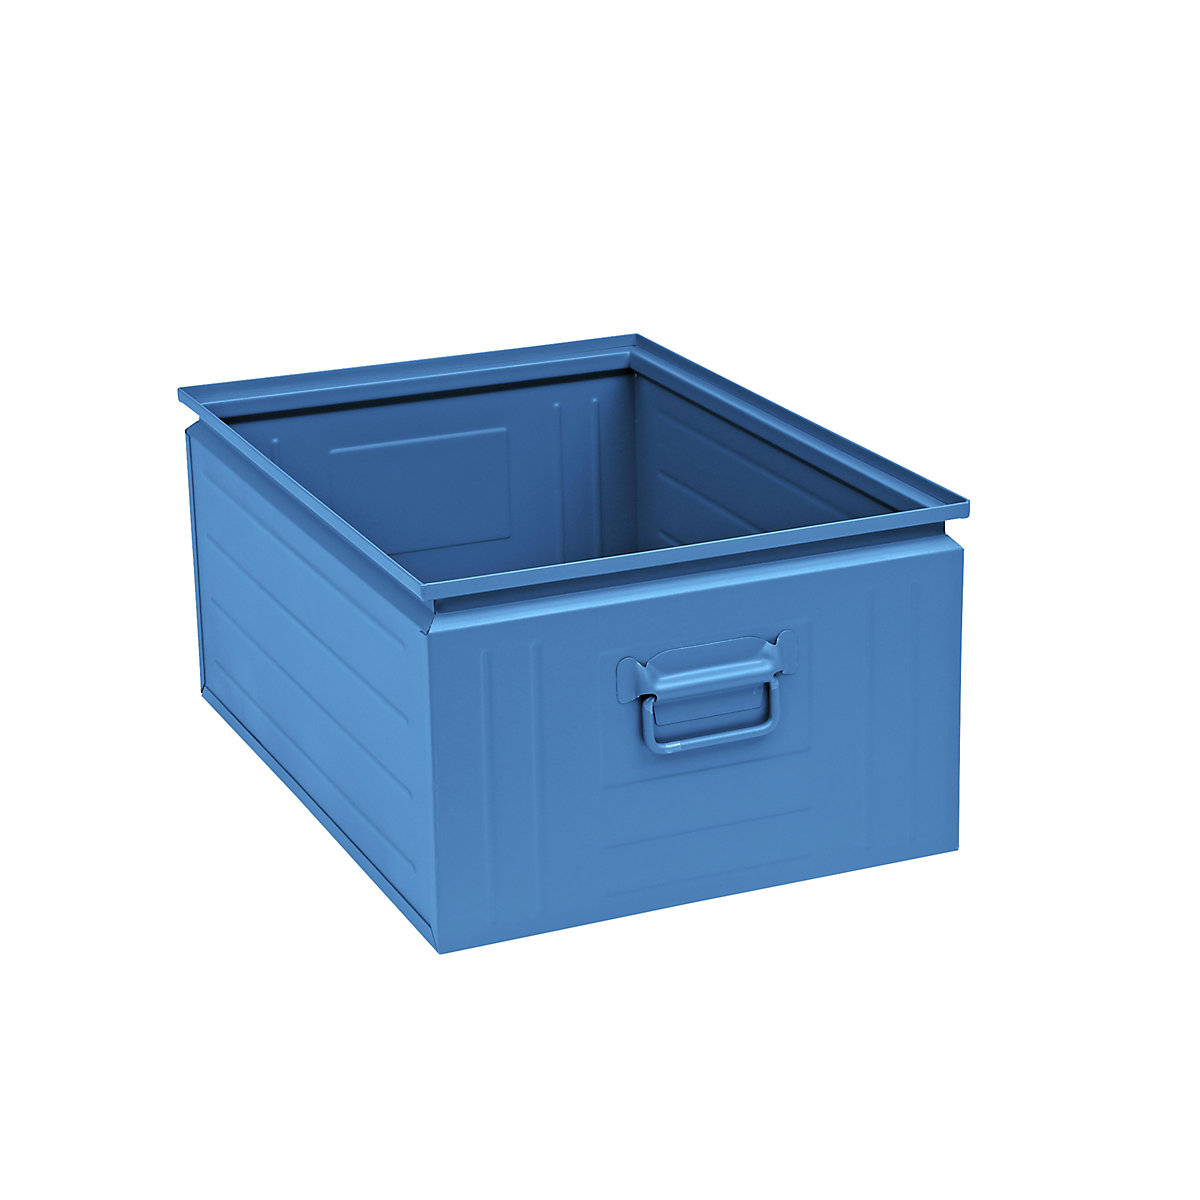 Stapelkasten aus Stahlblech, Inhalt ca. 80 l, lichtblau RAL 5012